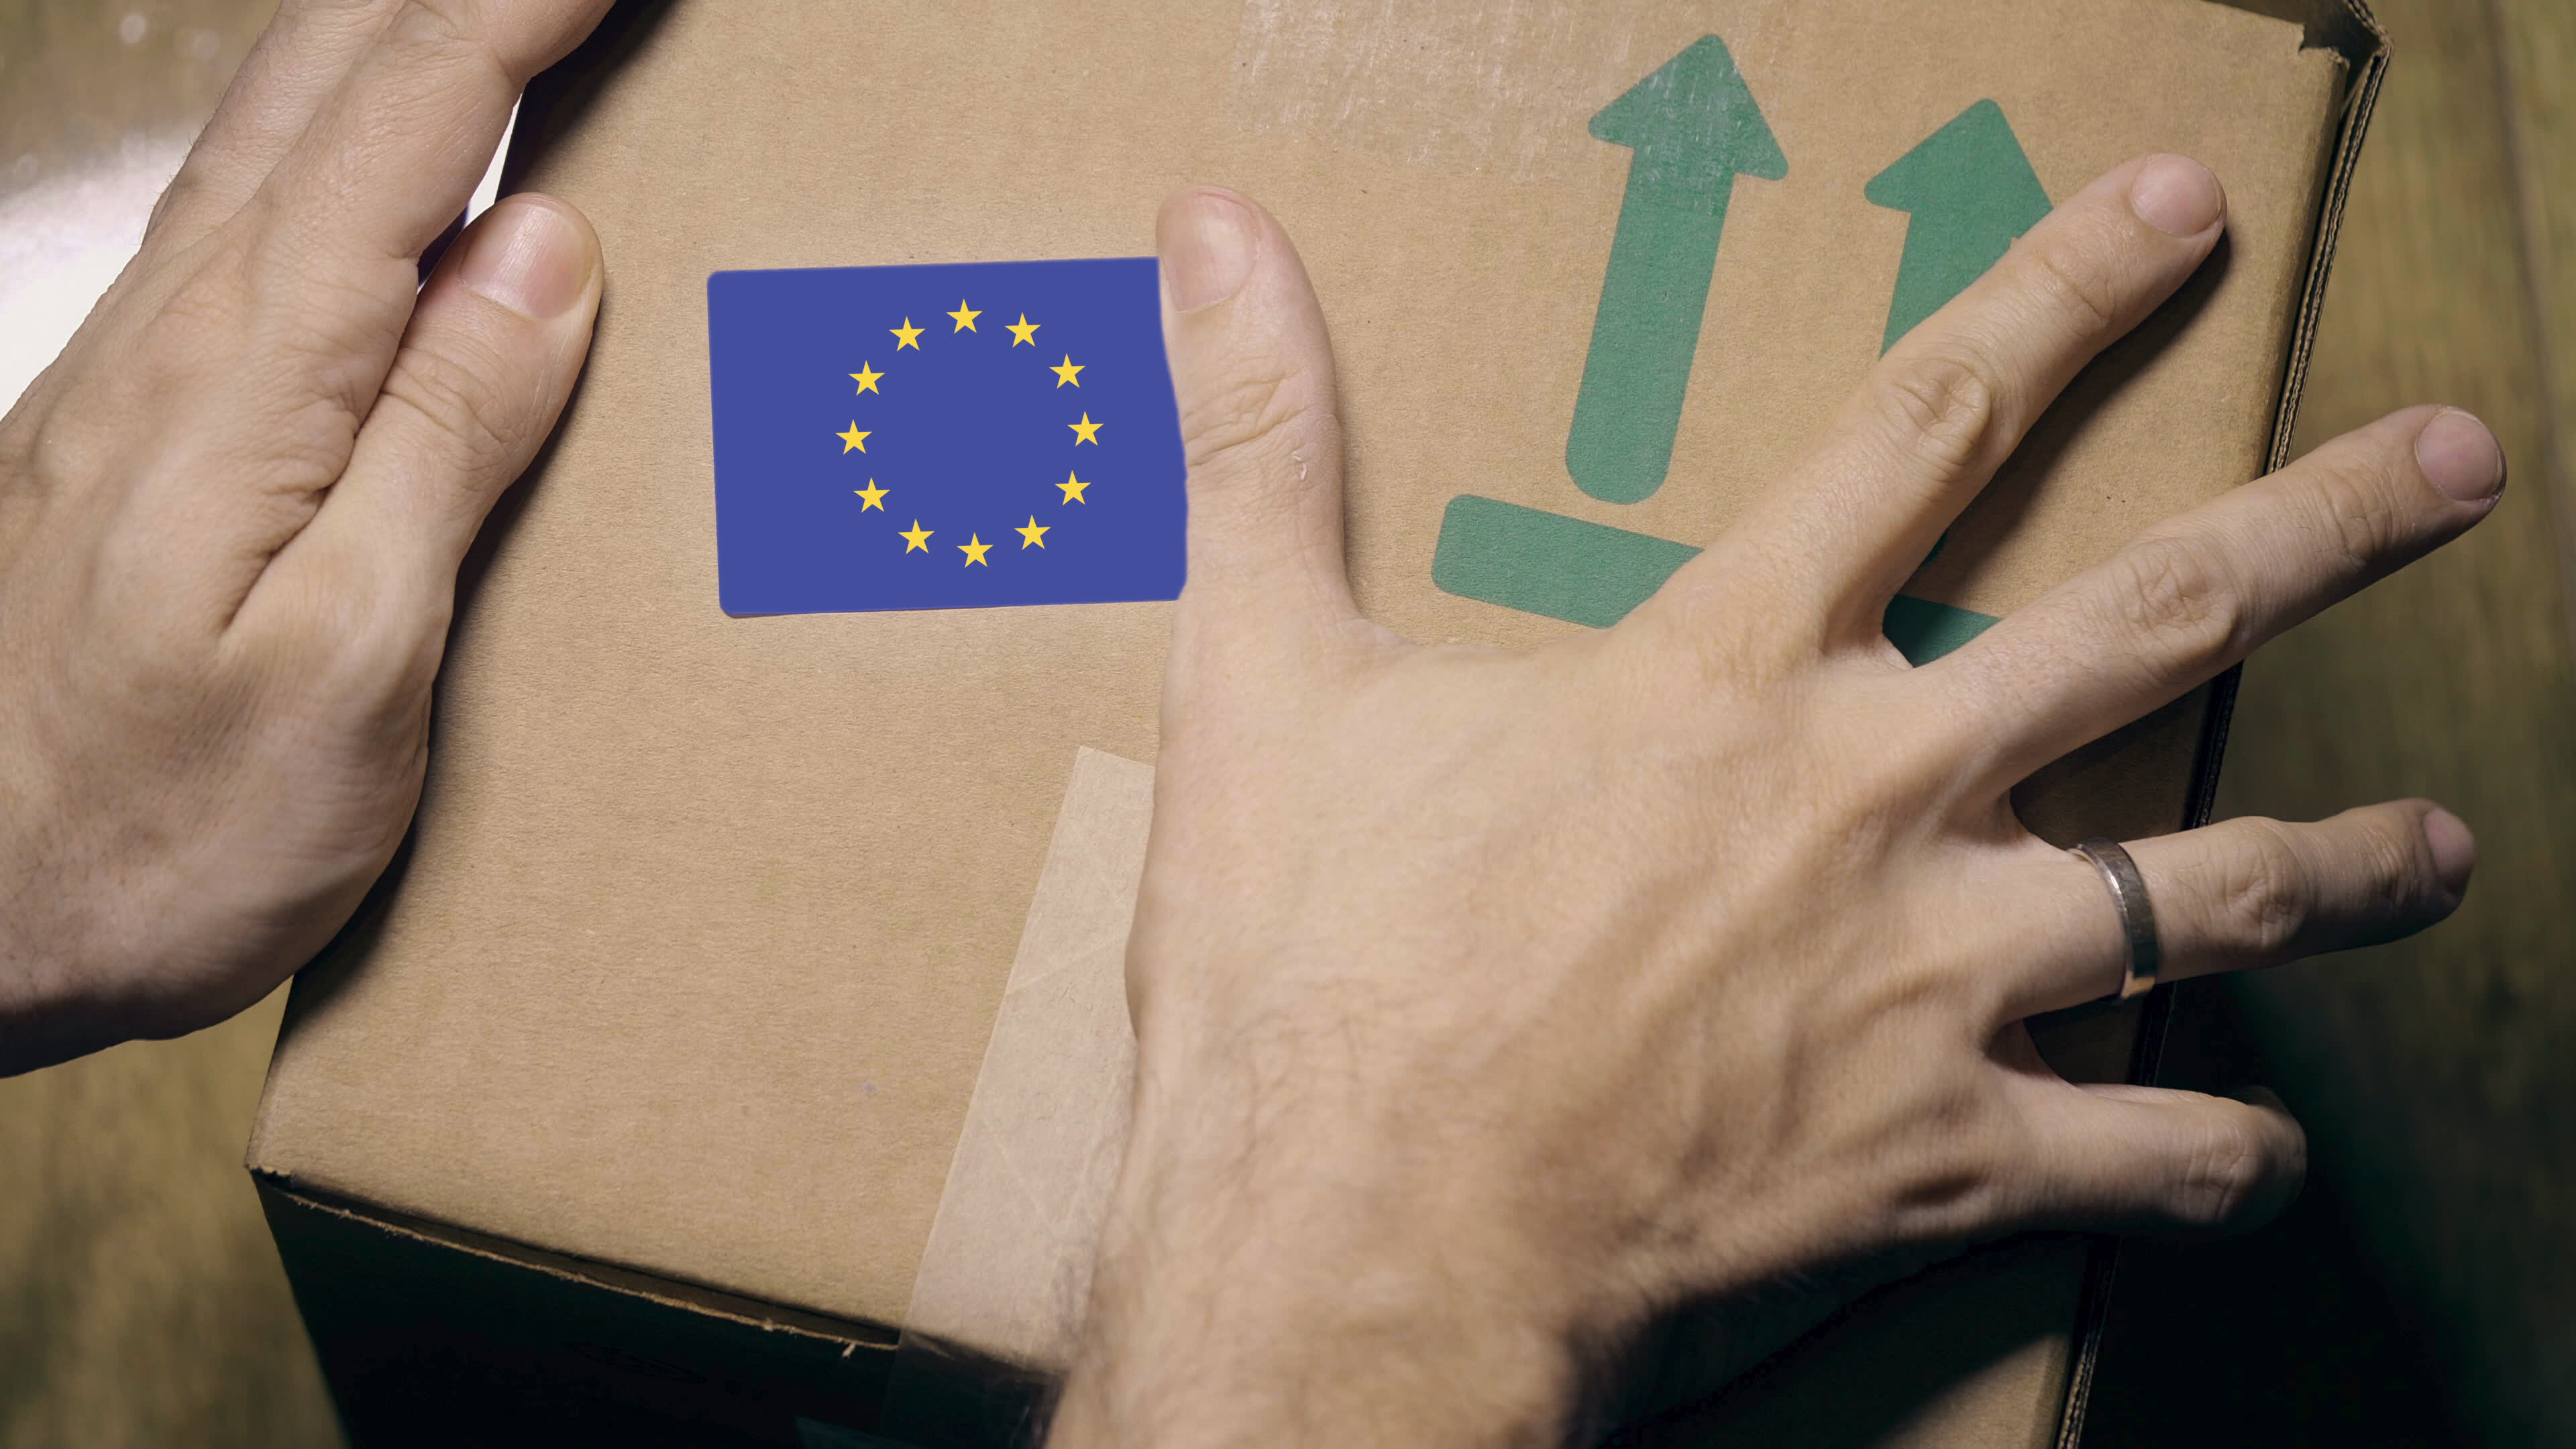 Packaging industry welcomes new EU packaging waste rules but warns legislators